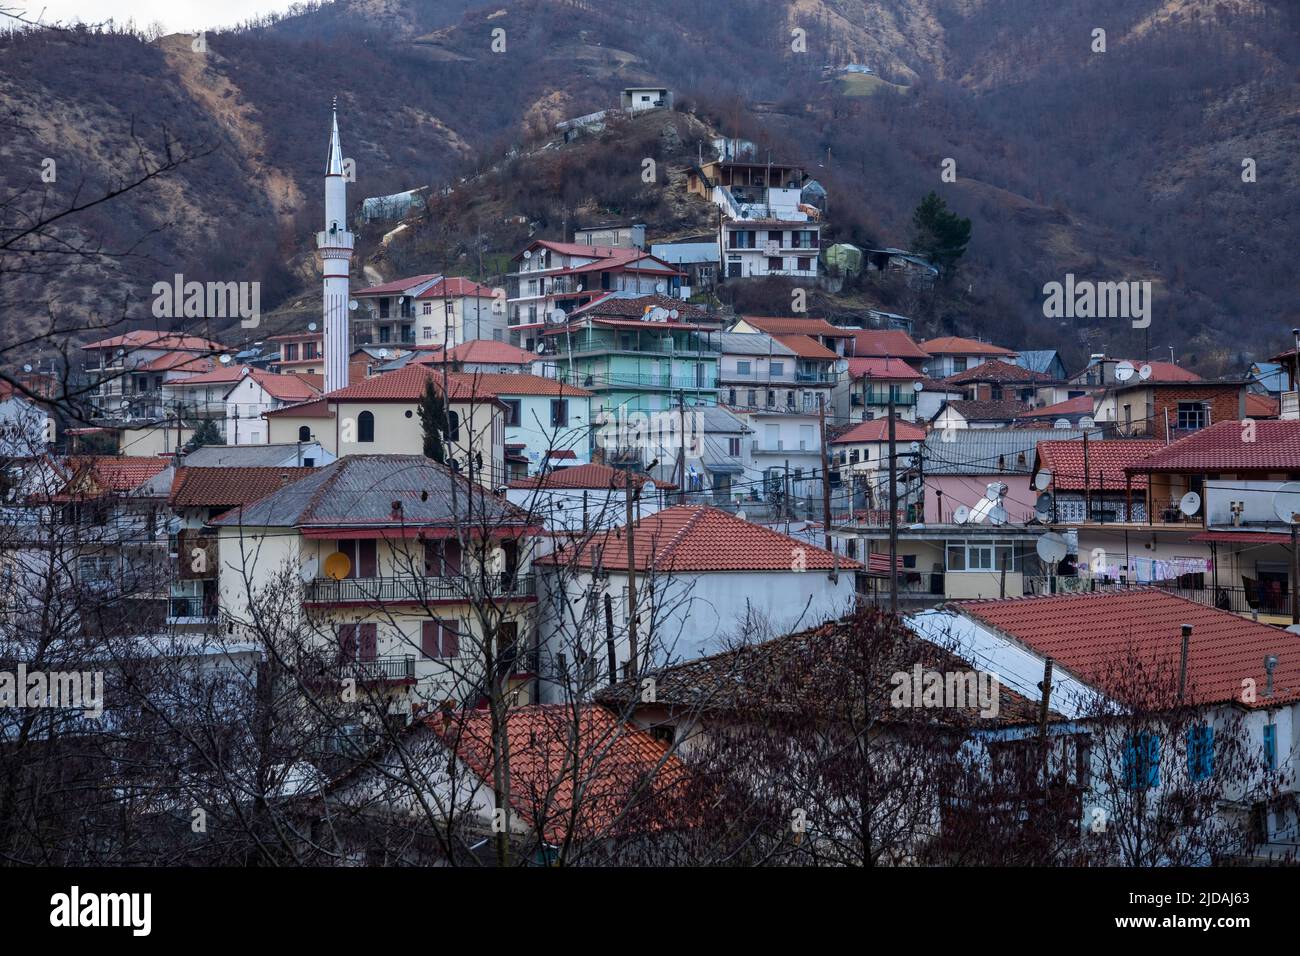 Thermes è un villaggio montagnoso di Pomak a Xanthi, al confine greco-bulgaro. Thermes è popolare per le sue terme calde, che si possono trovare in tutto il Foto Stock